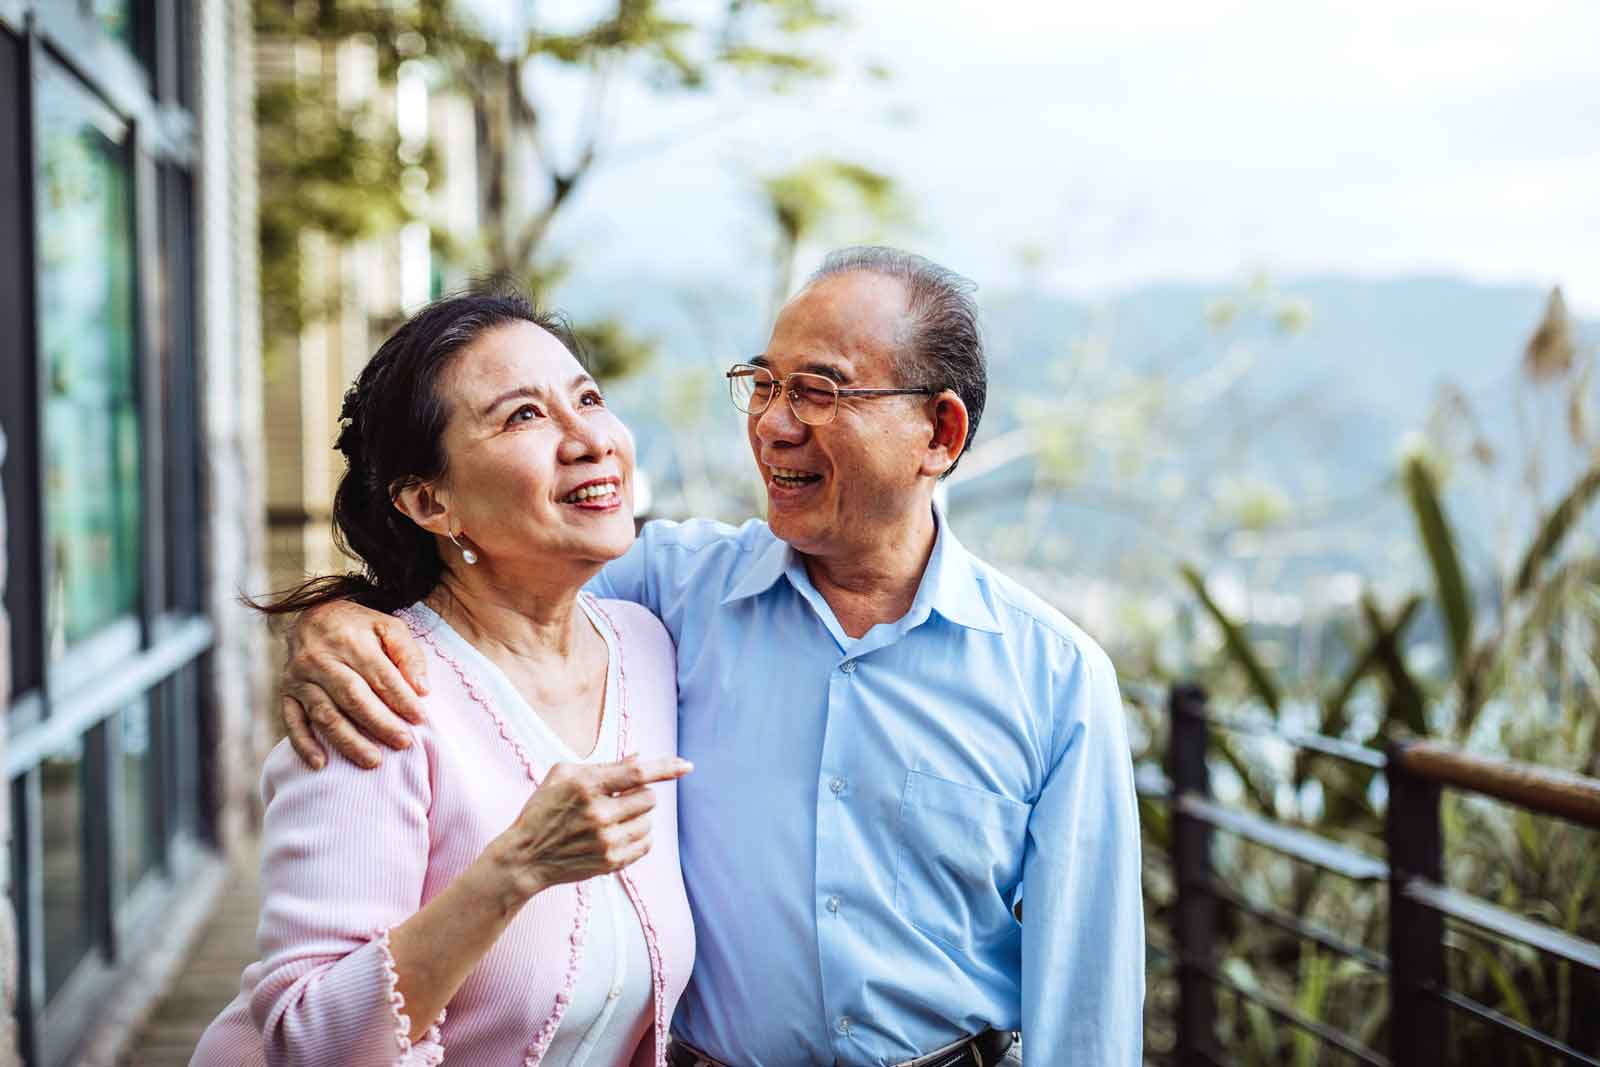 Mature couple enjoying joyful moments